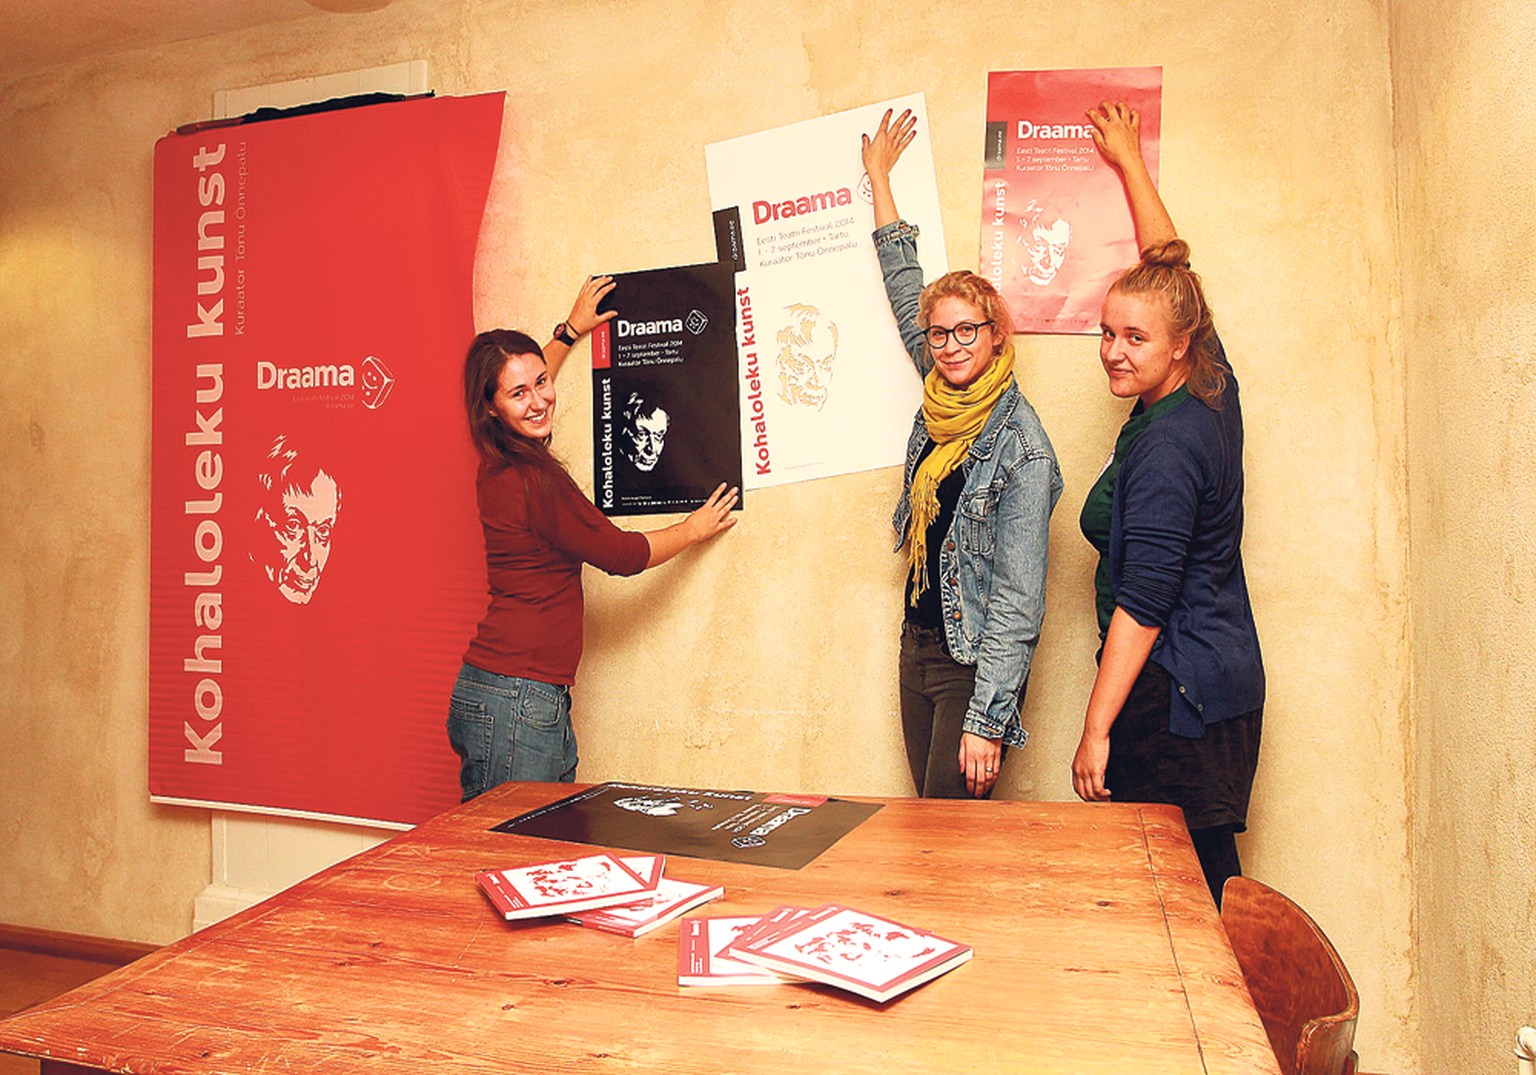 Festivali kunstnikud Katarina Klett (vasakult) ja Annika Lindemann ning festivali tegevjuht Kadi Rutens näitavad Draama plakateid, millest osa on juba linna üles pandud. Laual on eile trükist tulnud festivaliraamatud.